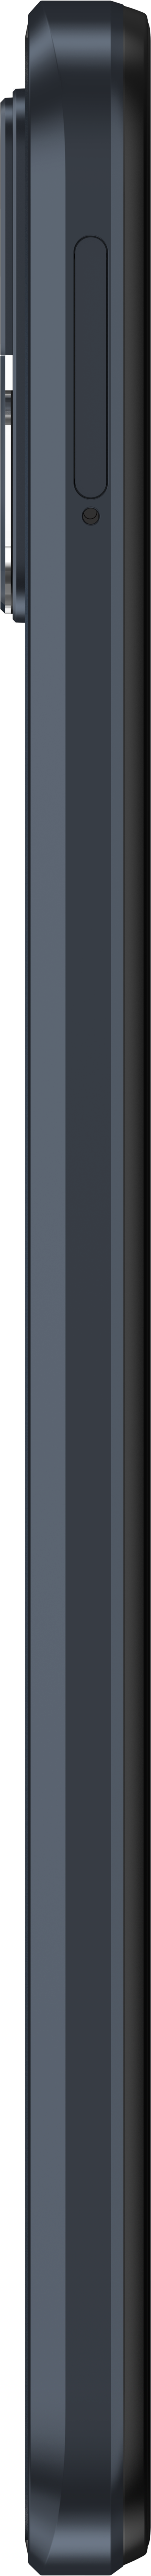 Motorola Moto E22 64GB Musta